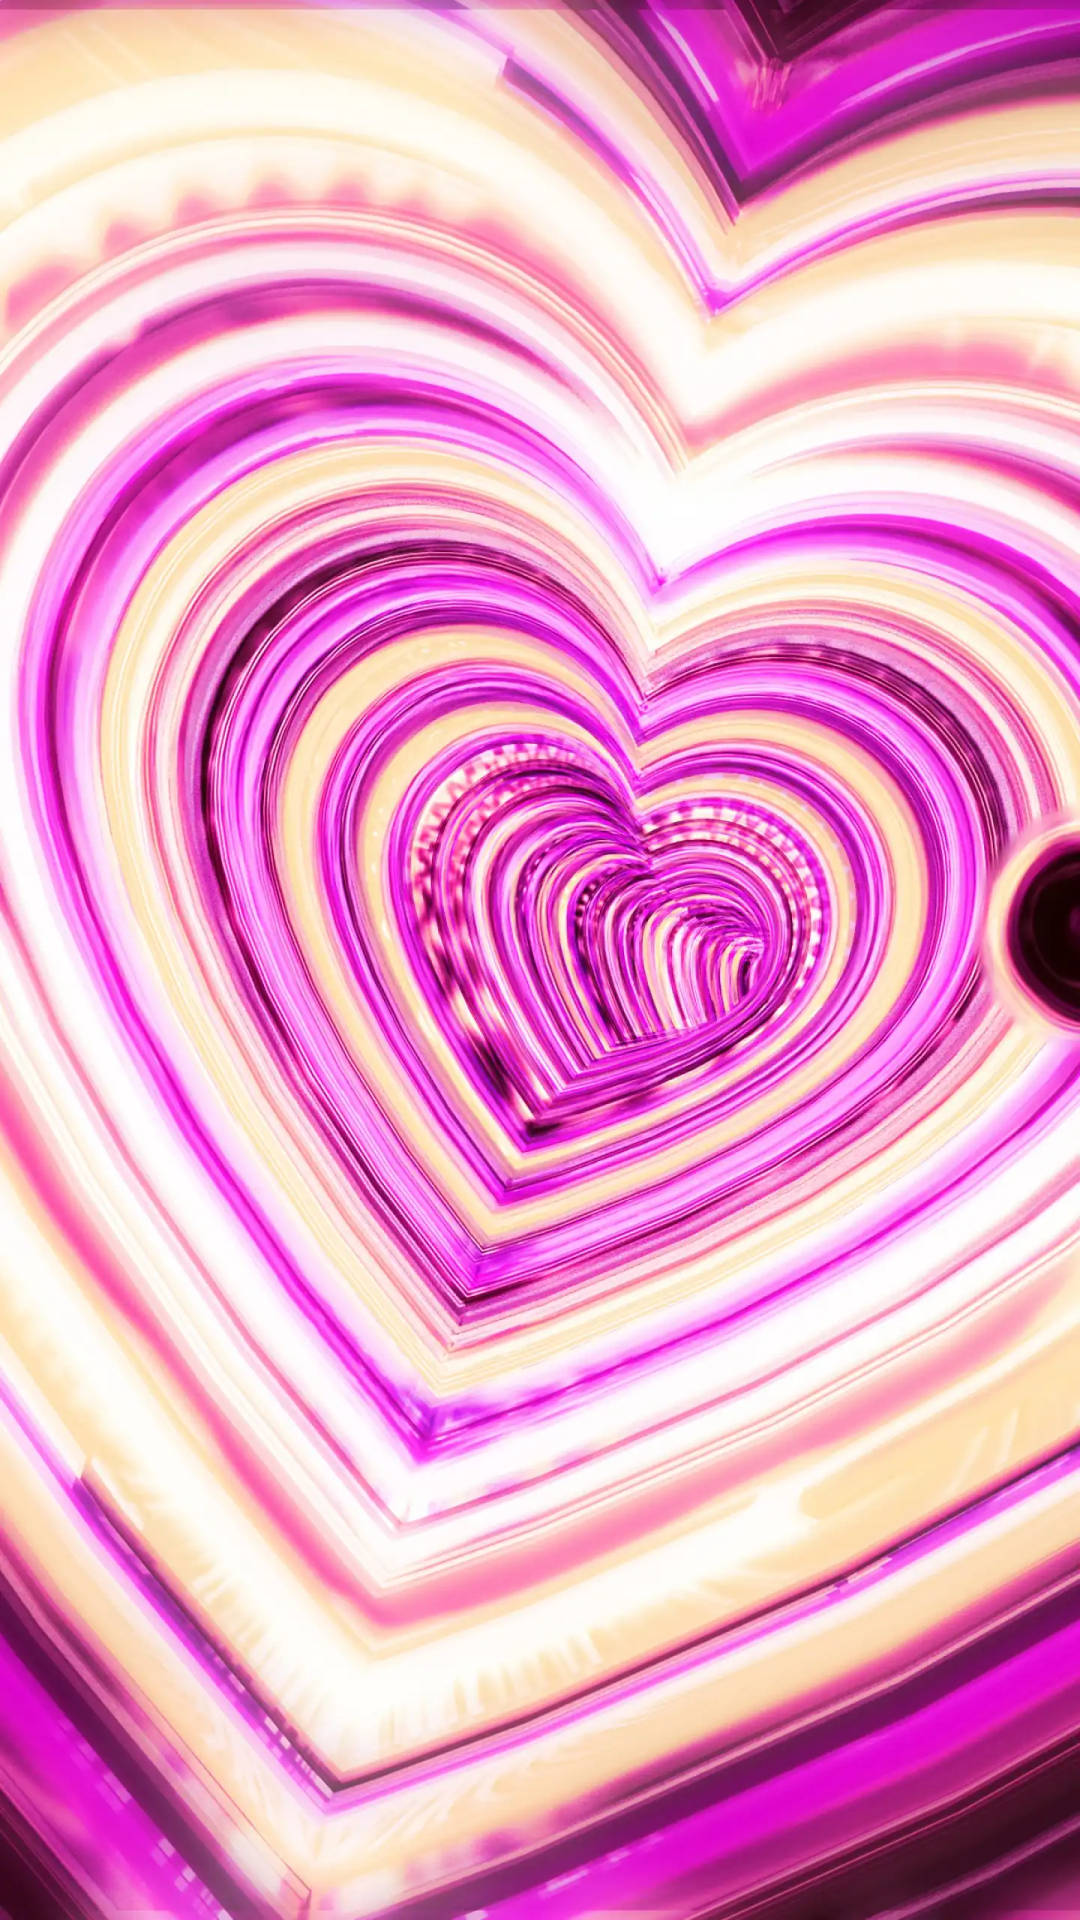 3d pink heart